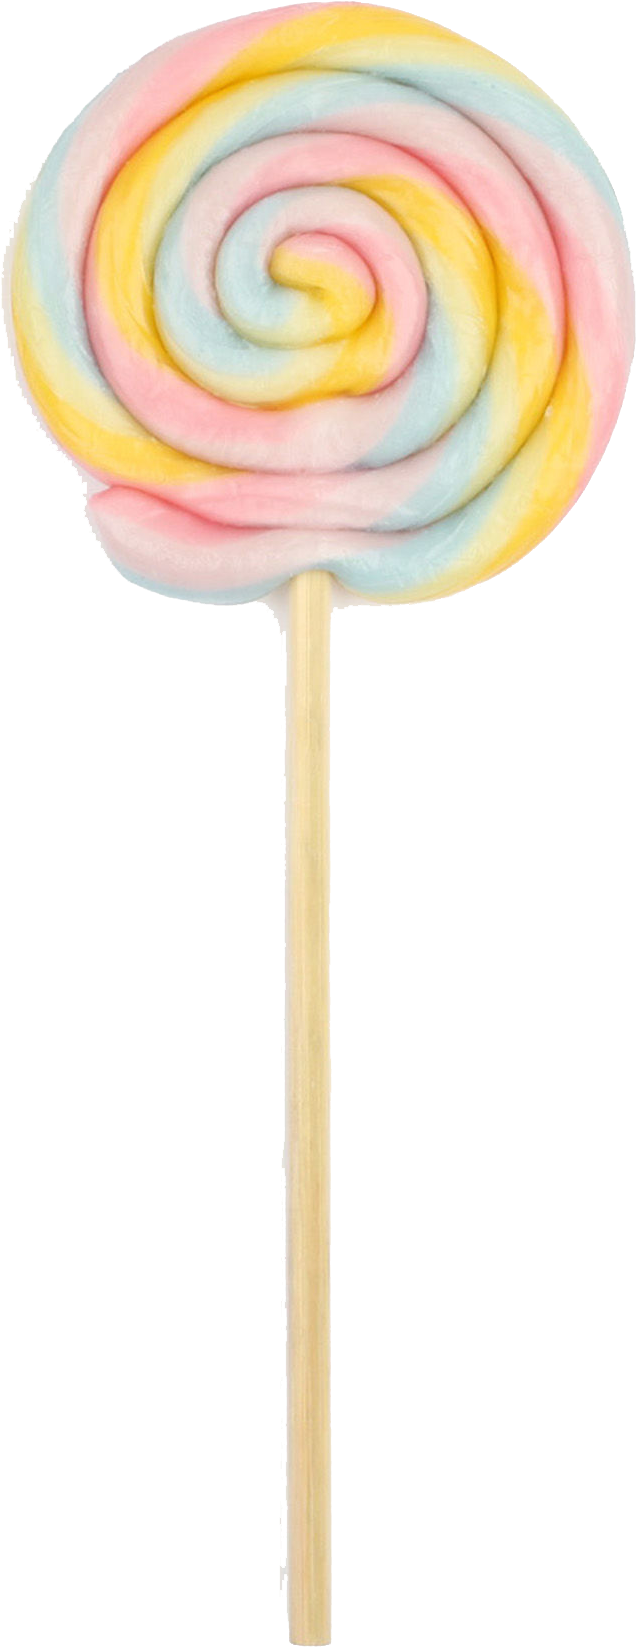 Rainbow Lollipop (2000x2000), Png Download